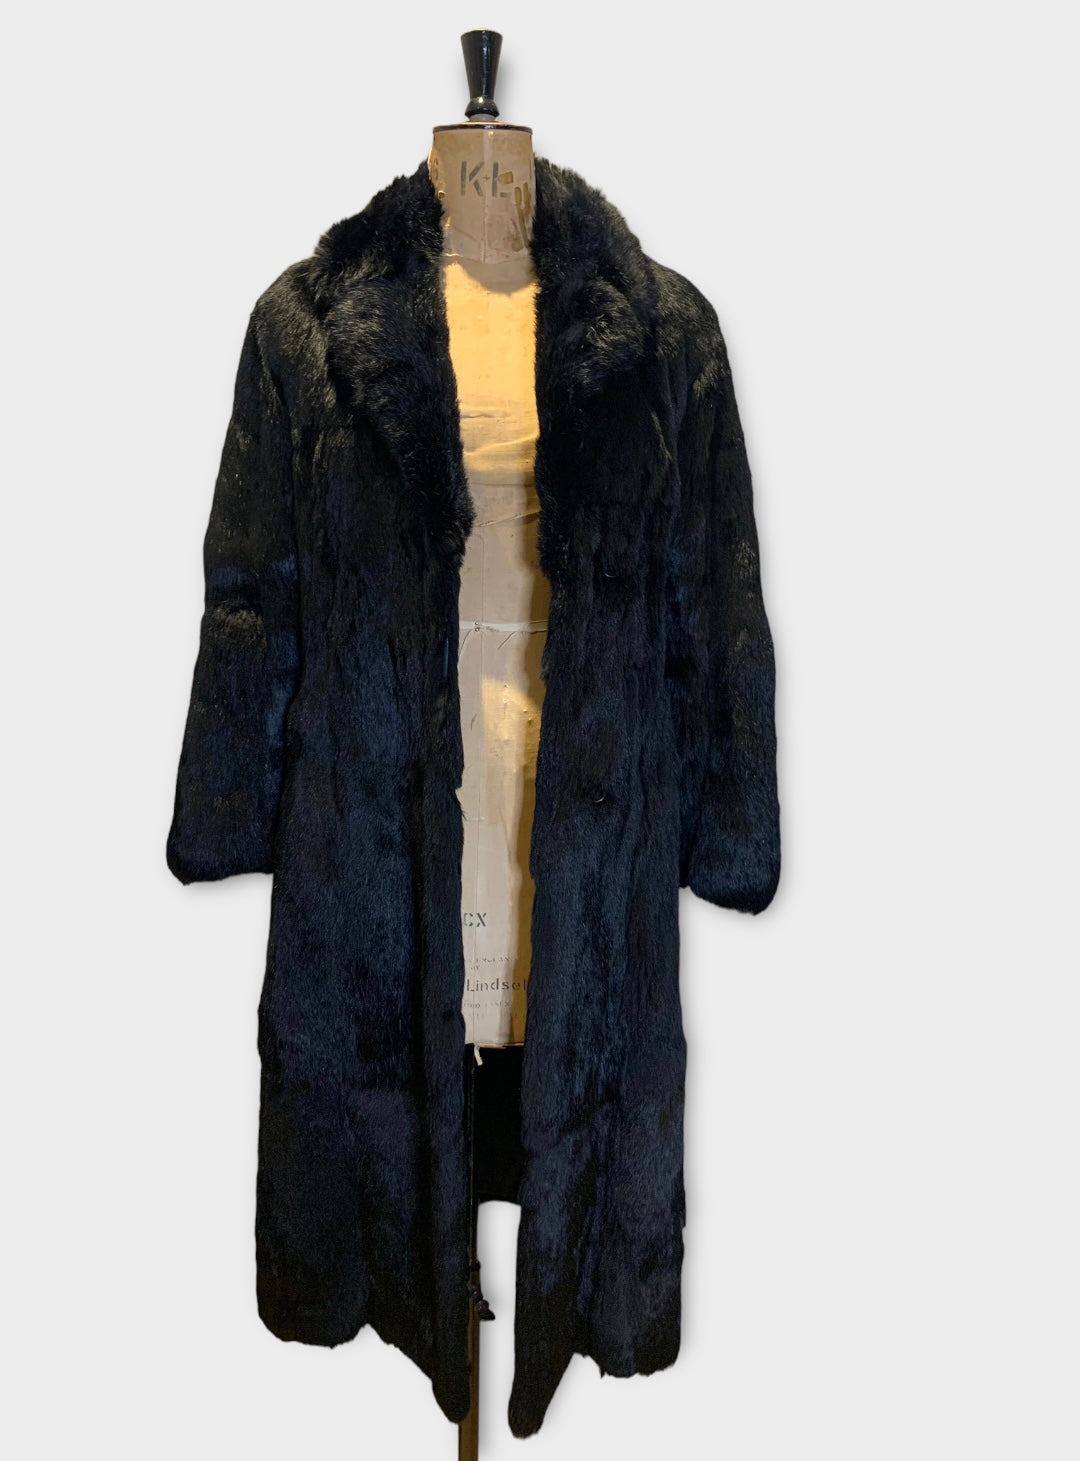 70s Black Vintage Long Fur Coat Size UK 12